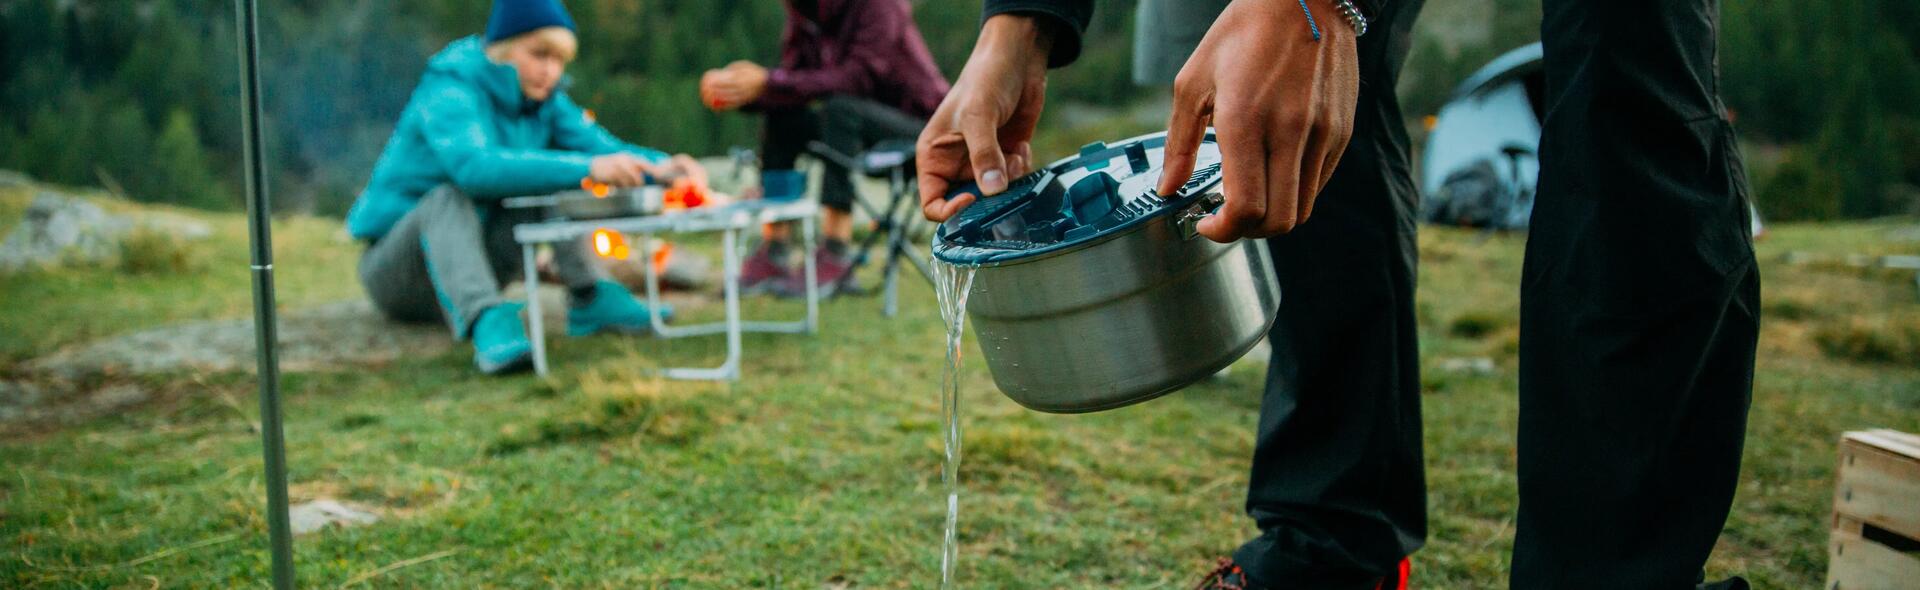 如何清潔與保養露營鍋具